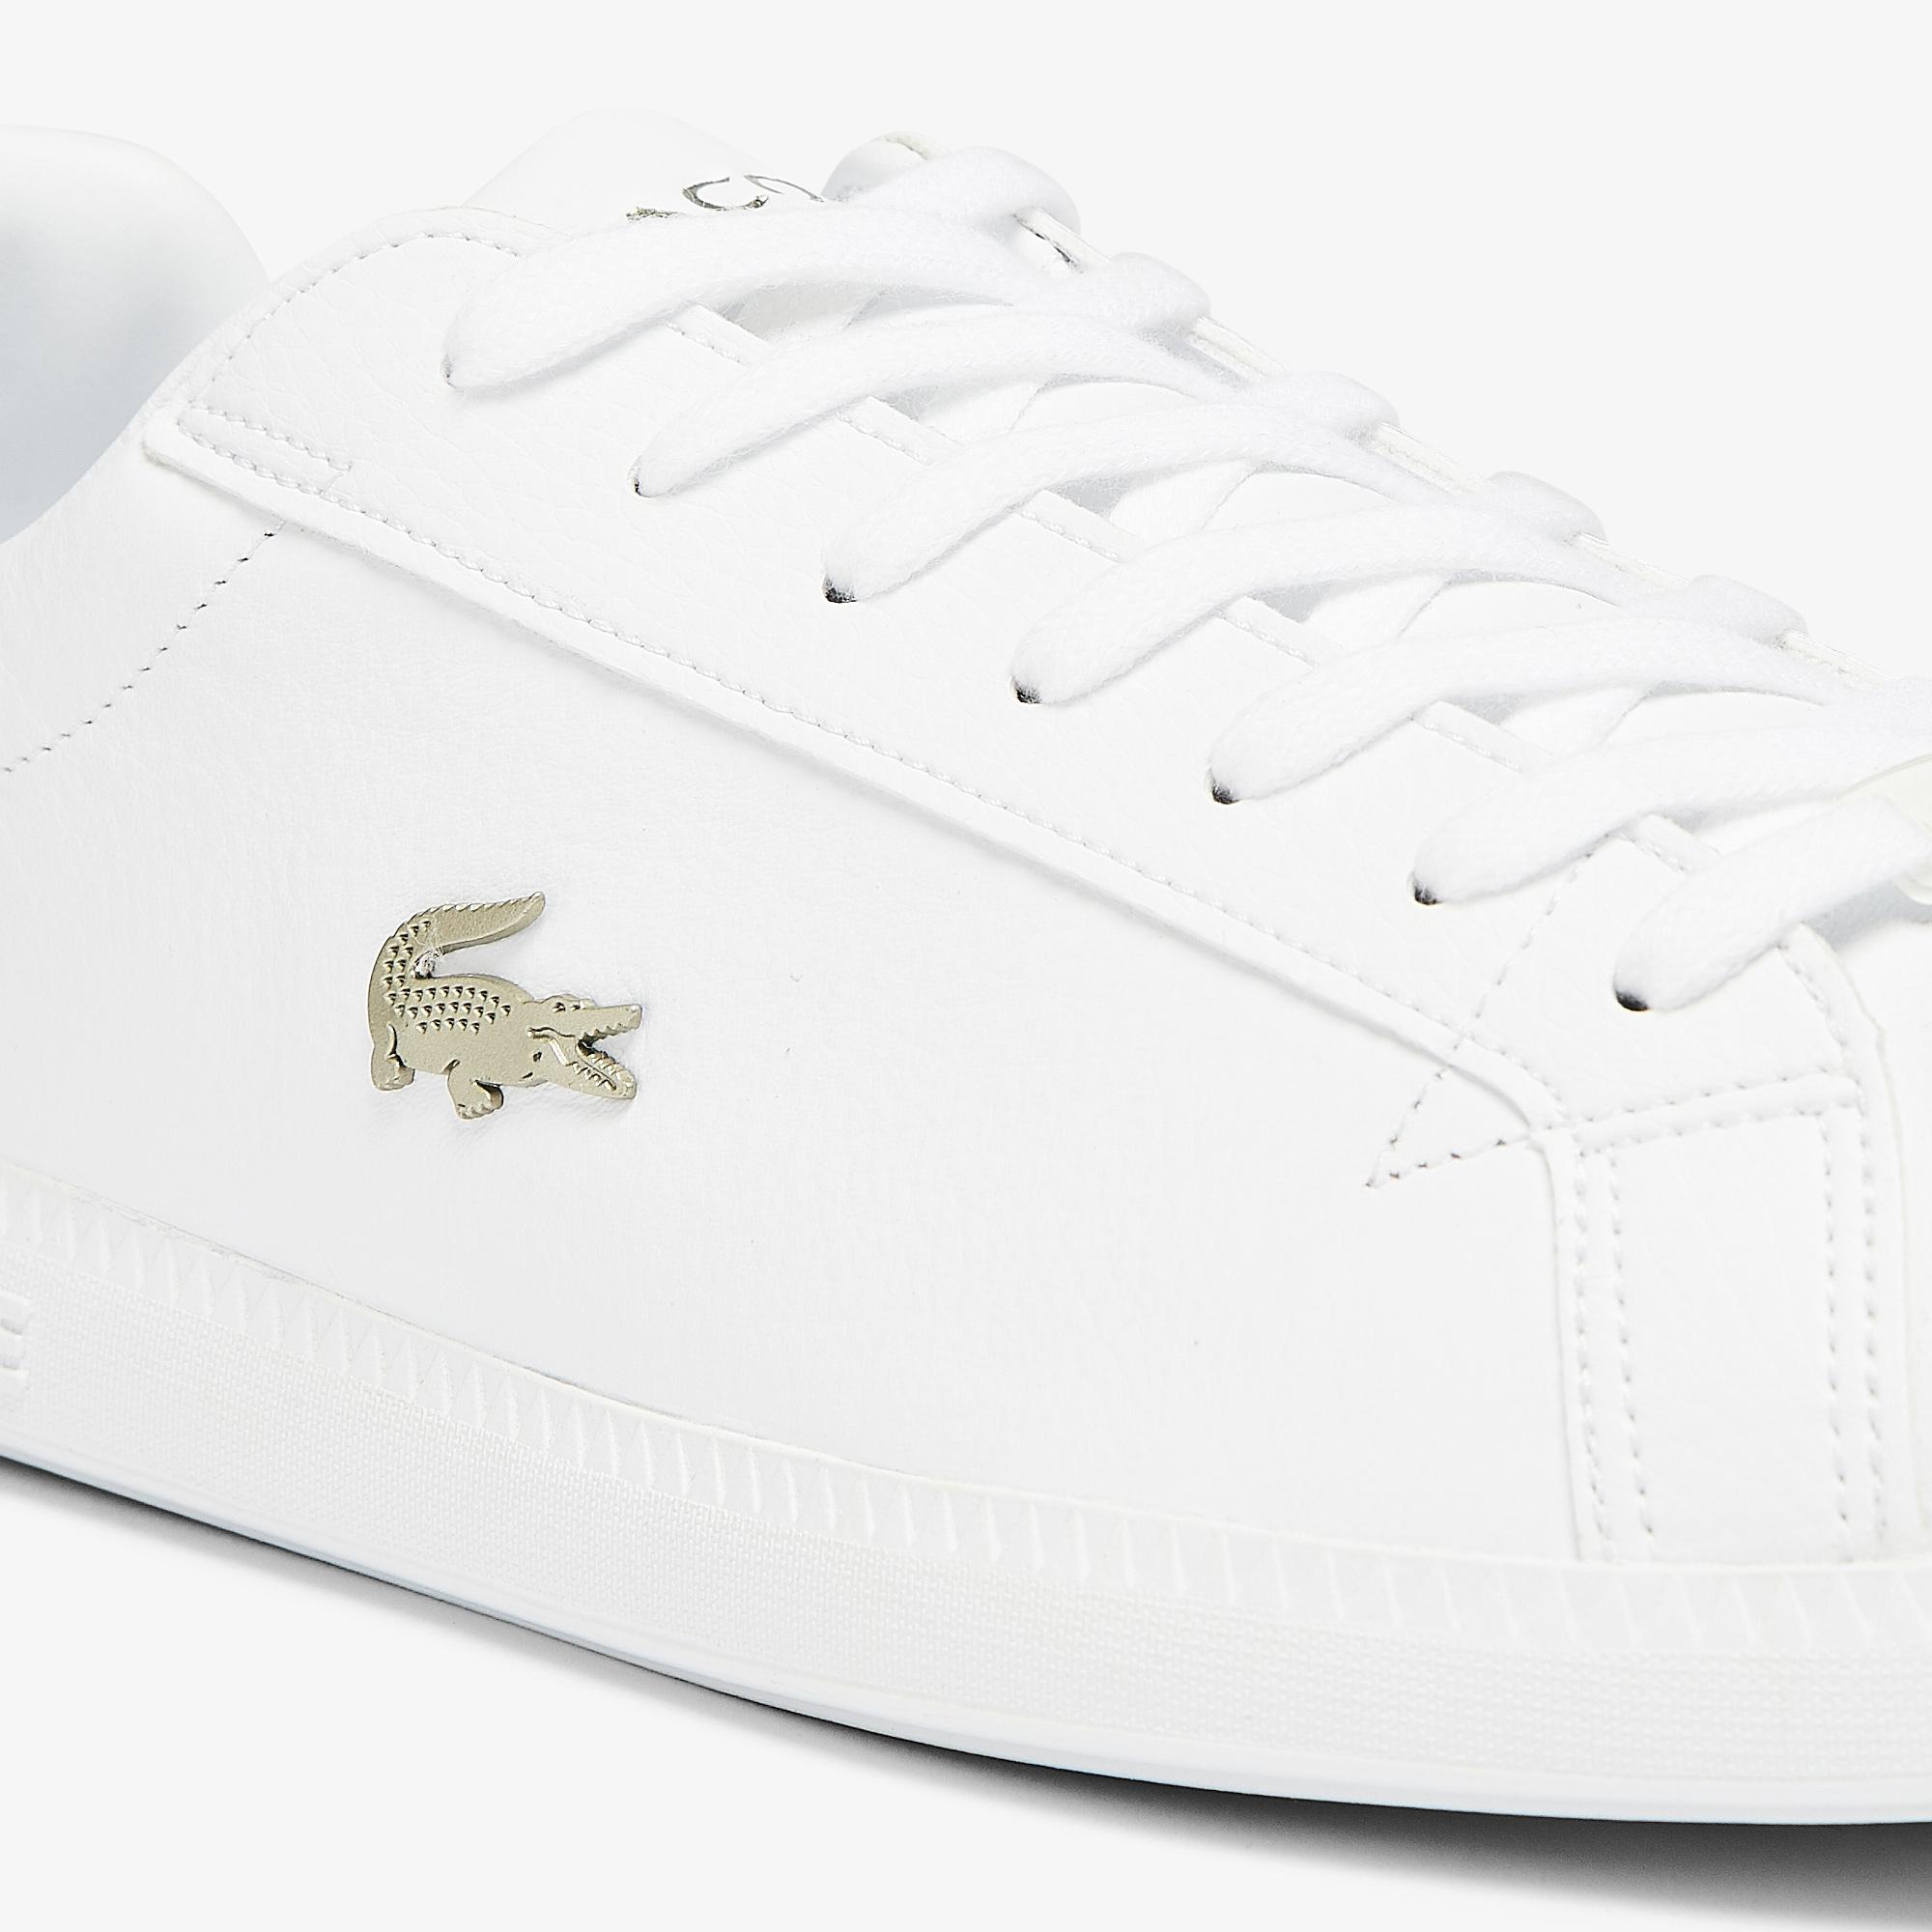 Lacoste Graduate Erkek Beyaz Sneaker. 7